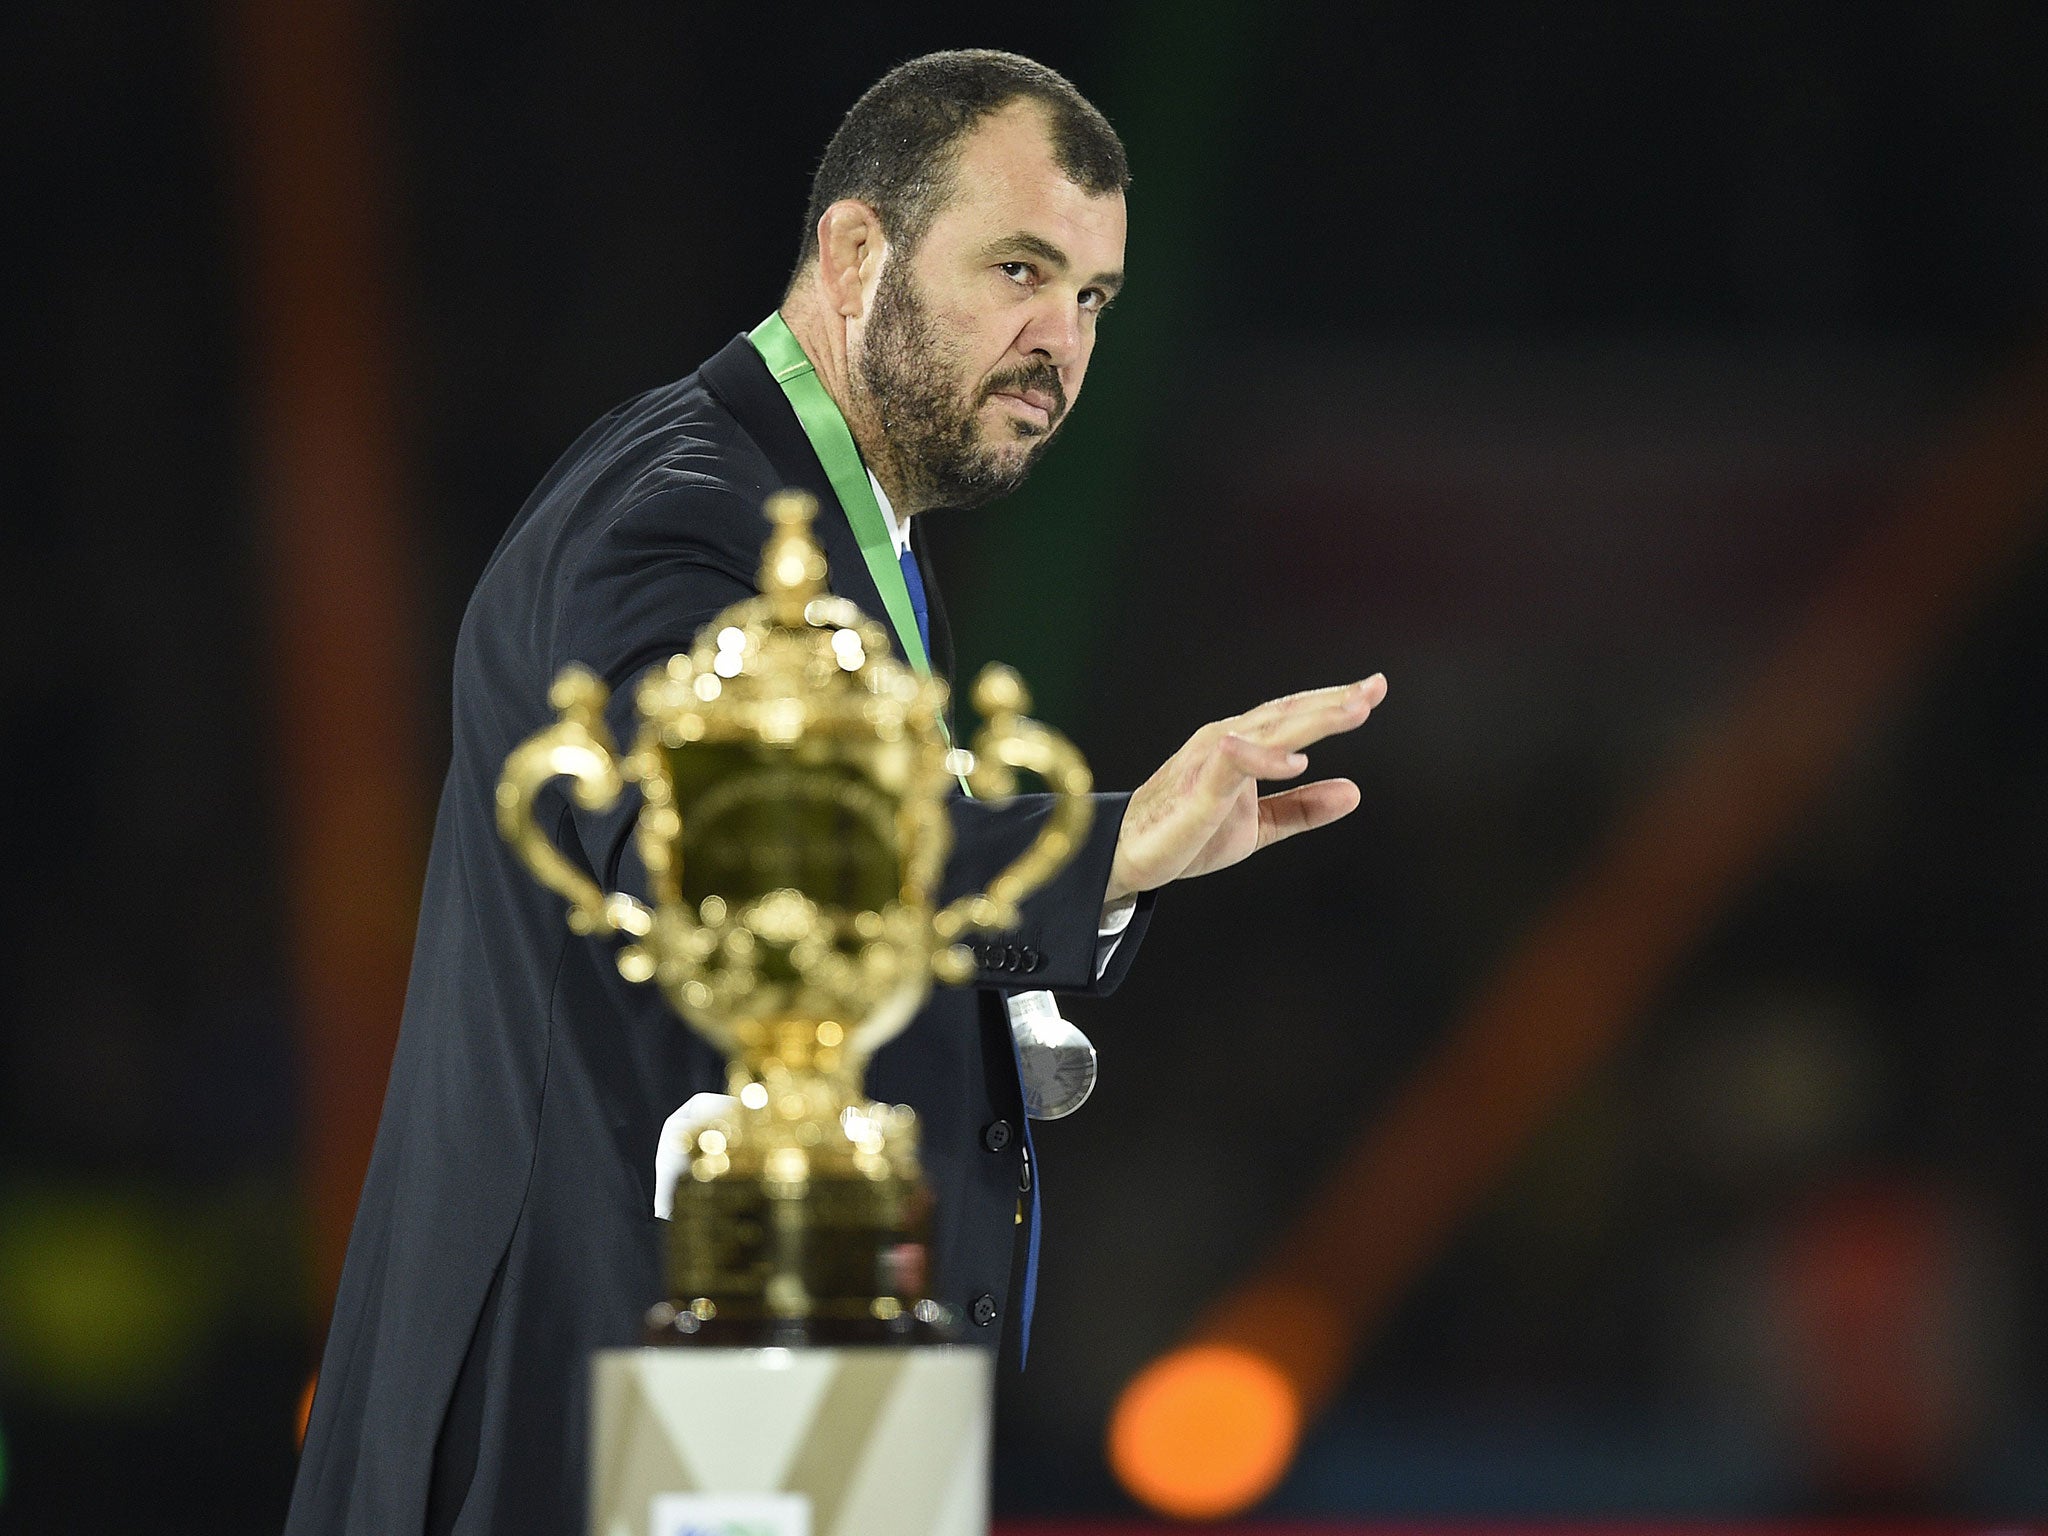 Australia head coach Michael Cheika following the Rugby World Cup final